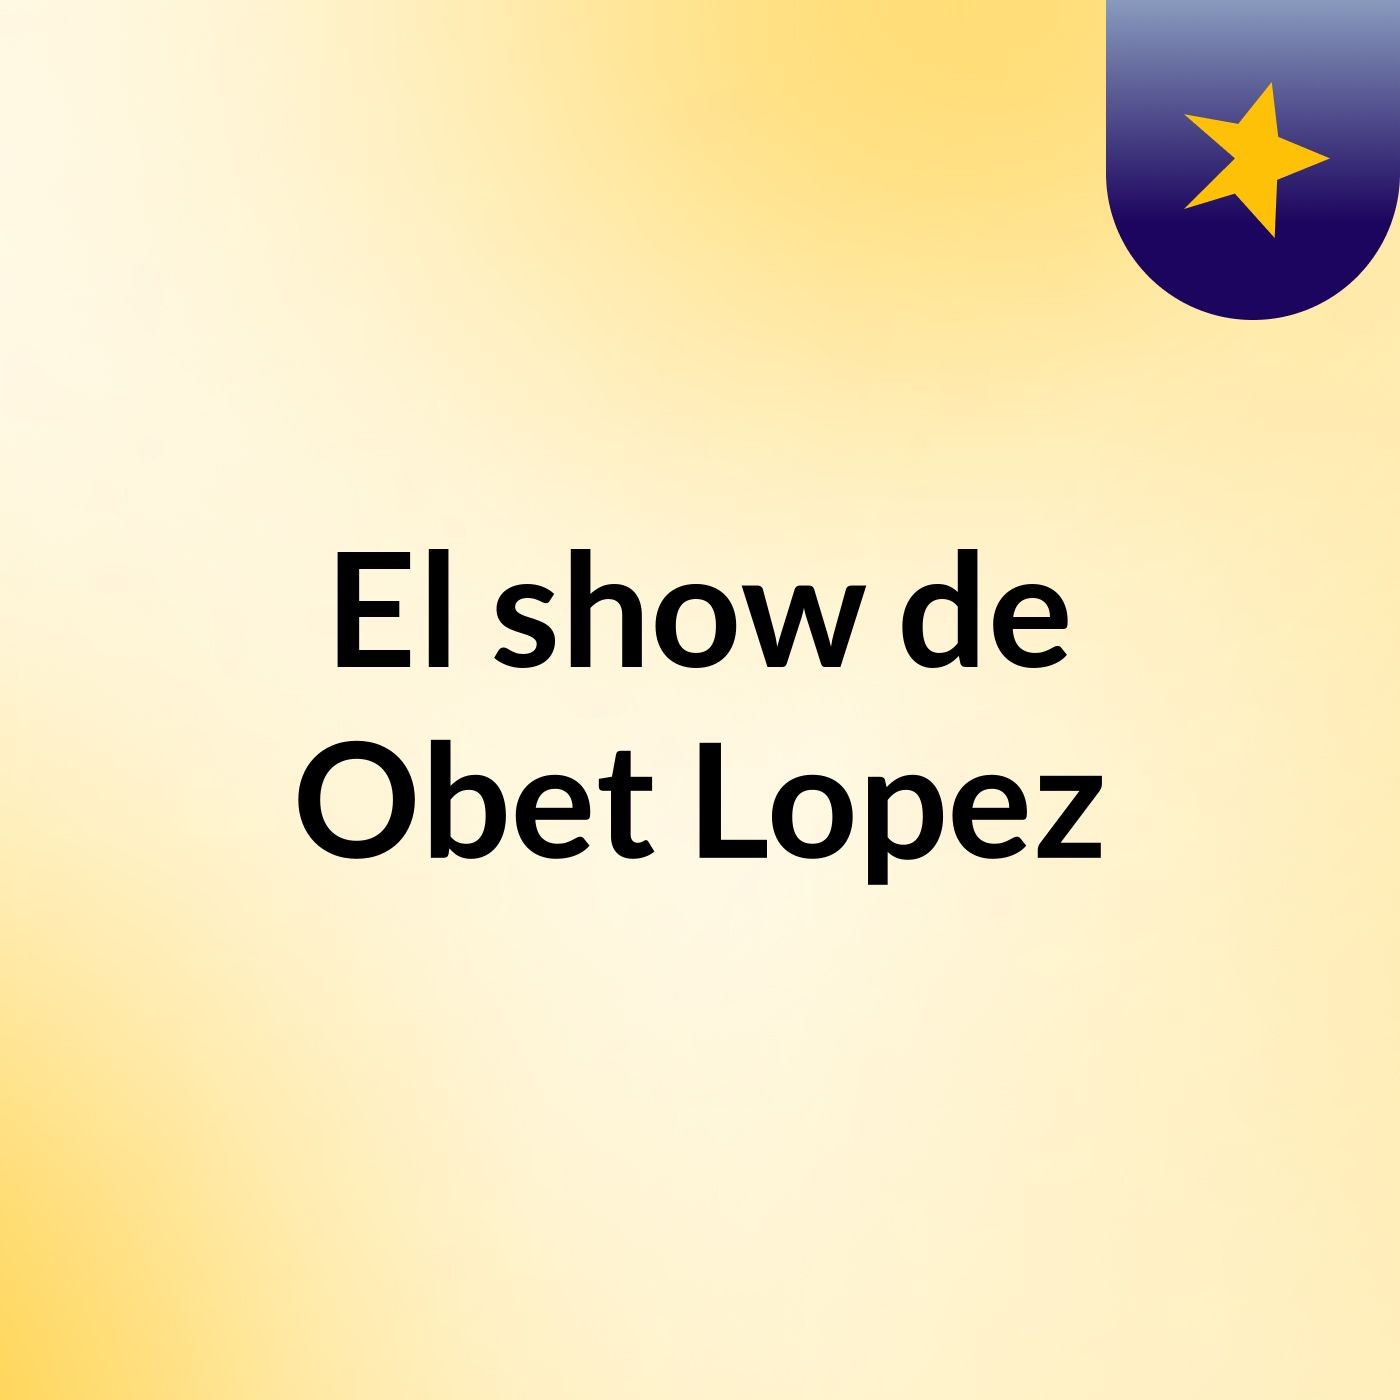 El show de Obet Lopez